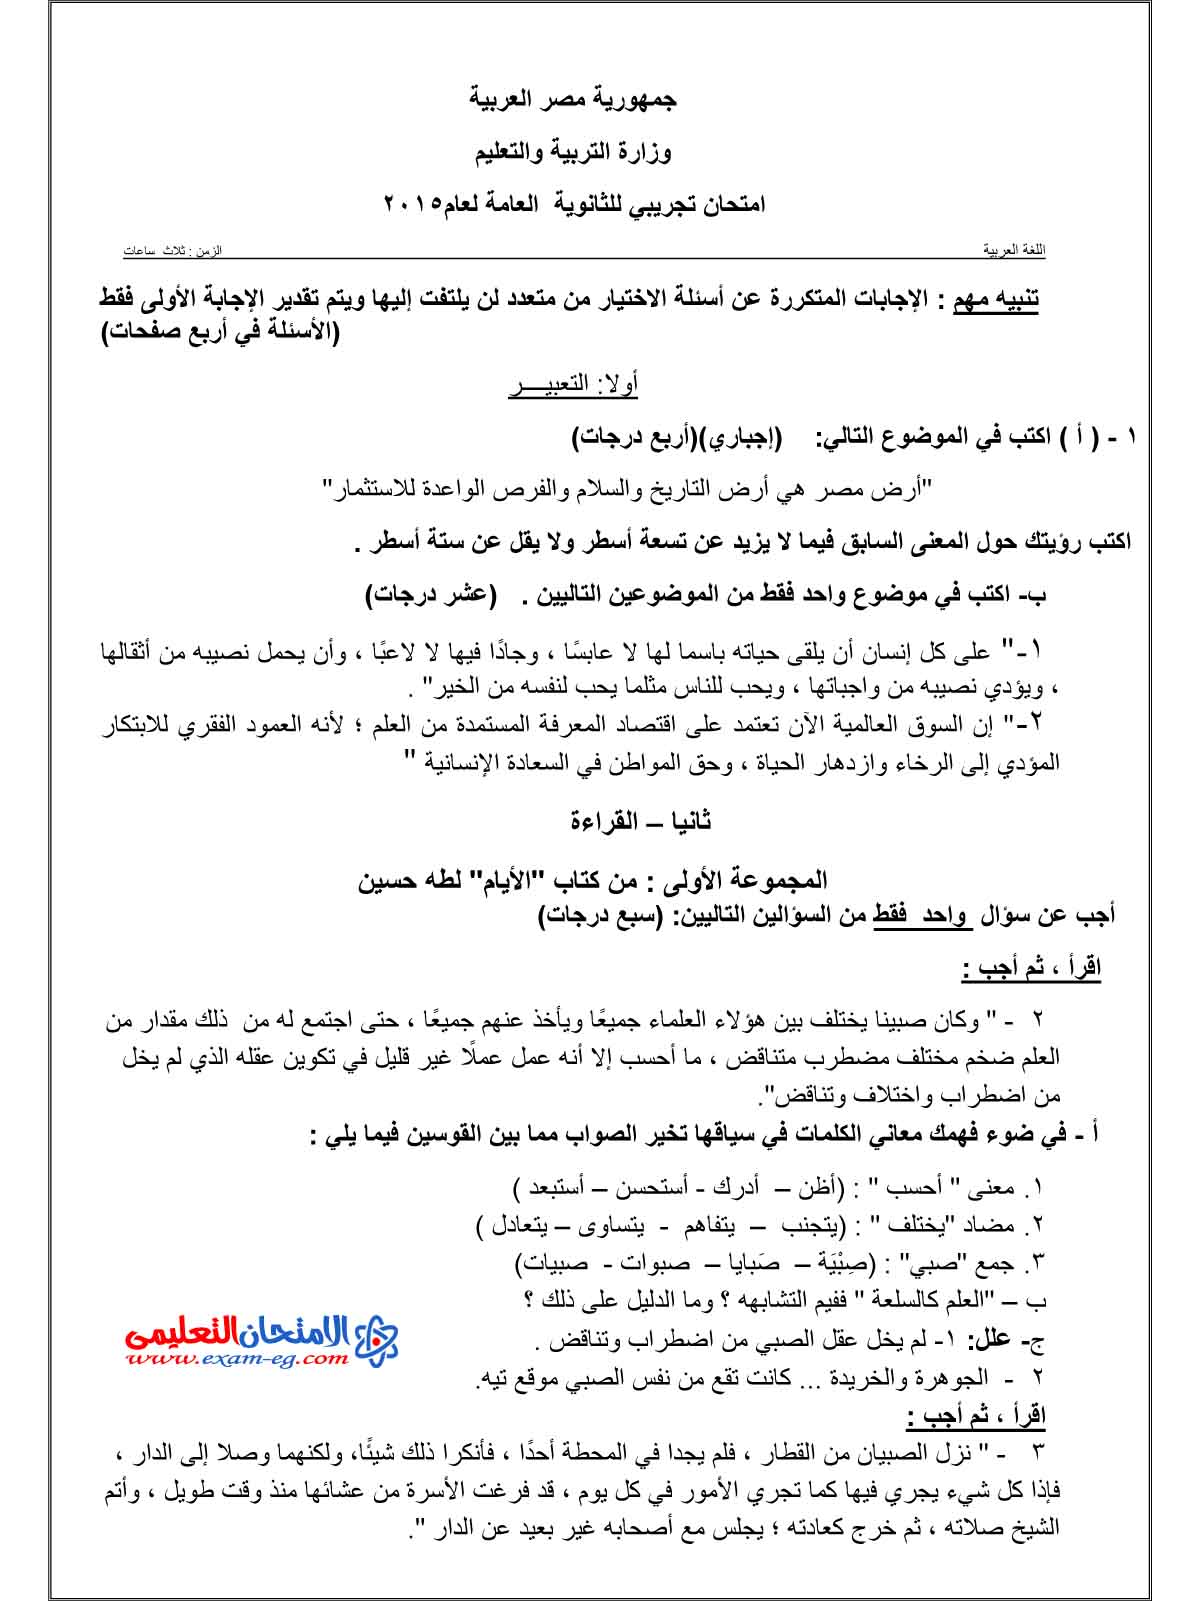 امتحان الوزارة في اللغة العربية